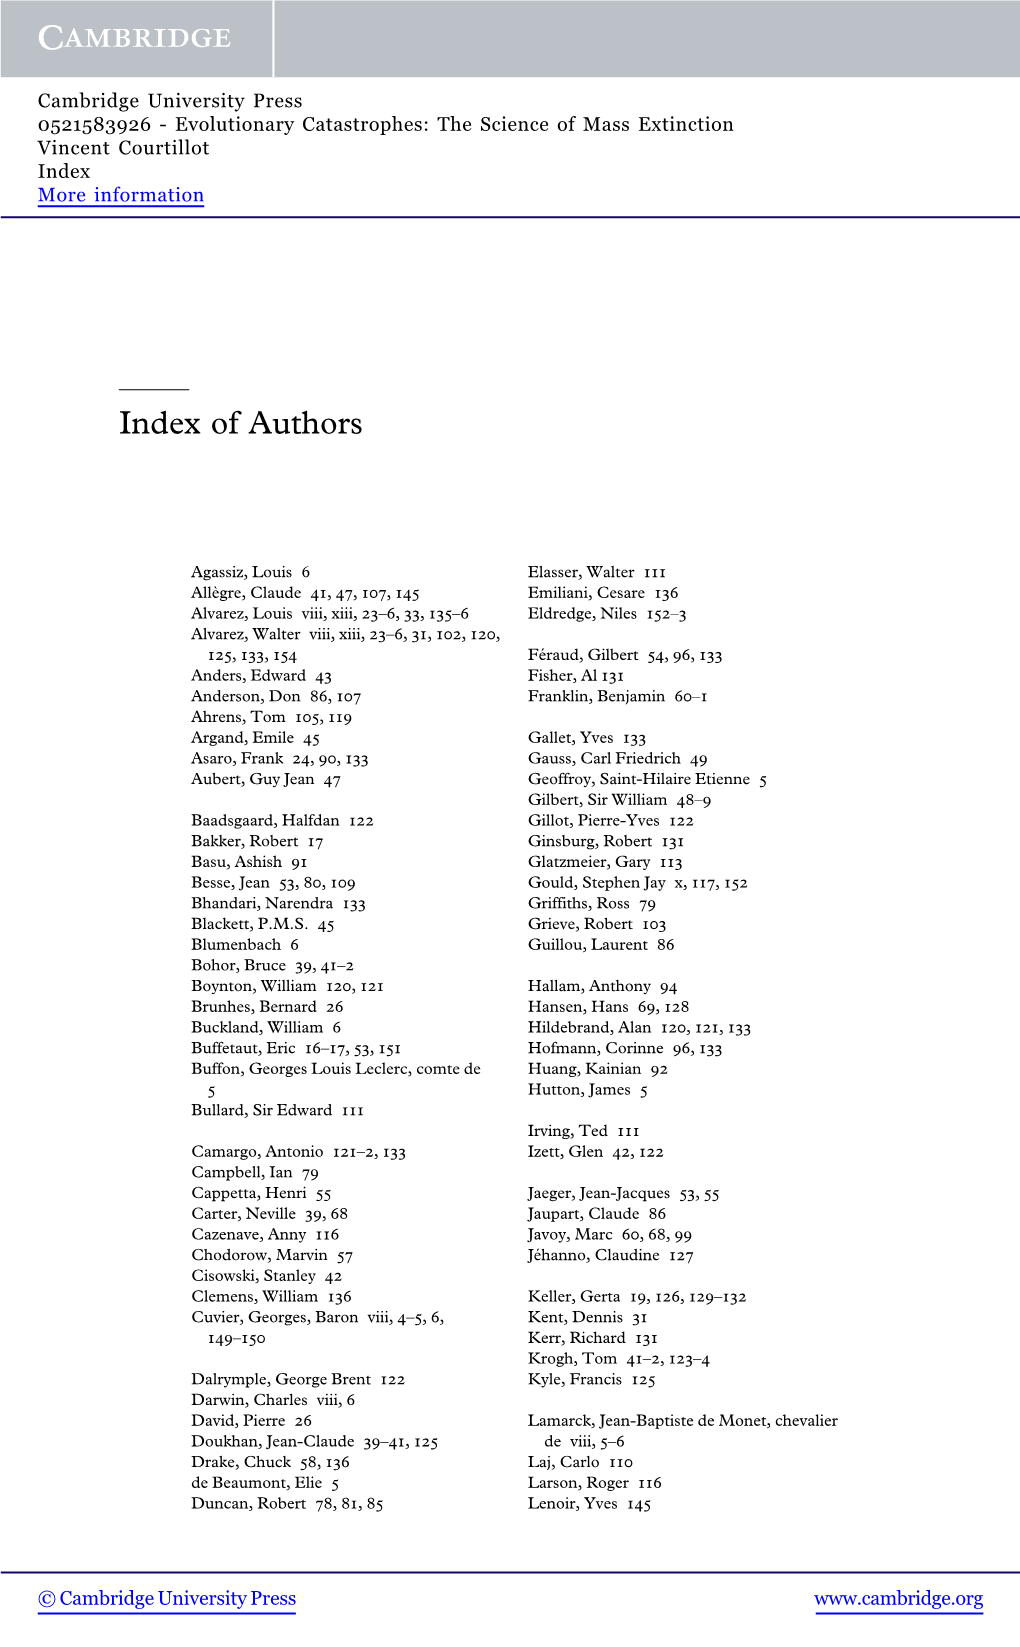 Index of Authors